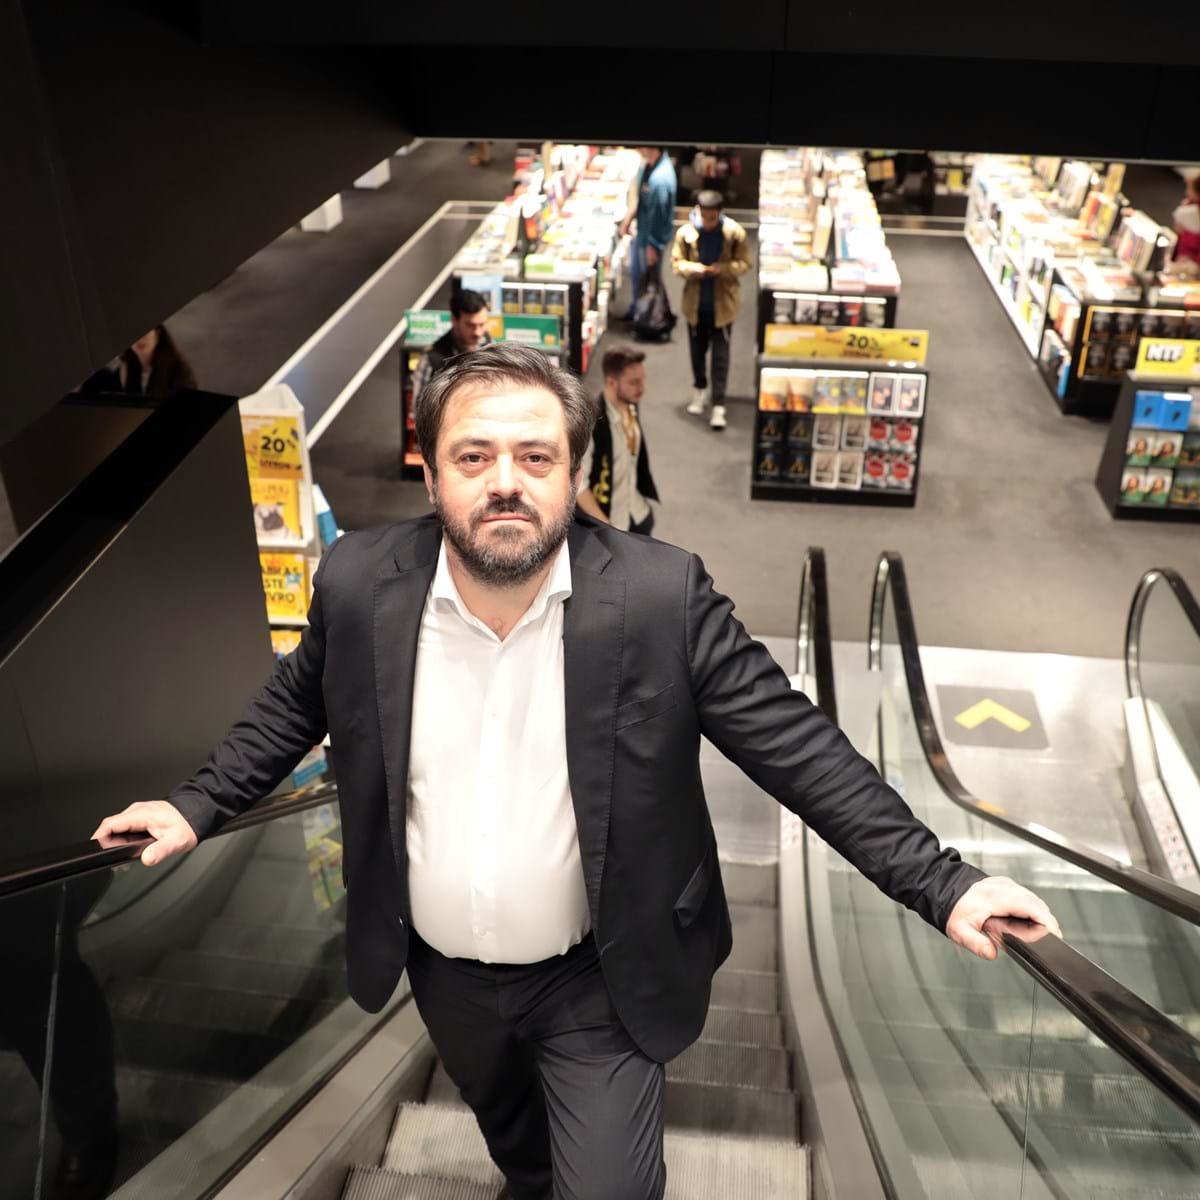 Fnac compra lojas da MediaMarkt em Portugal - SIC Notícias